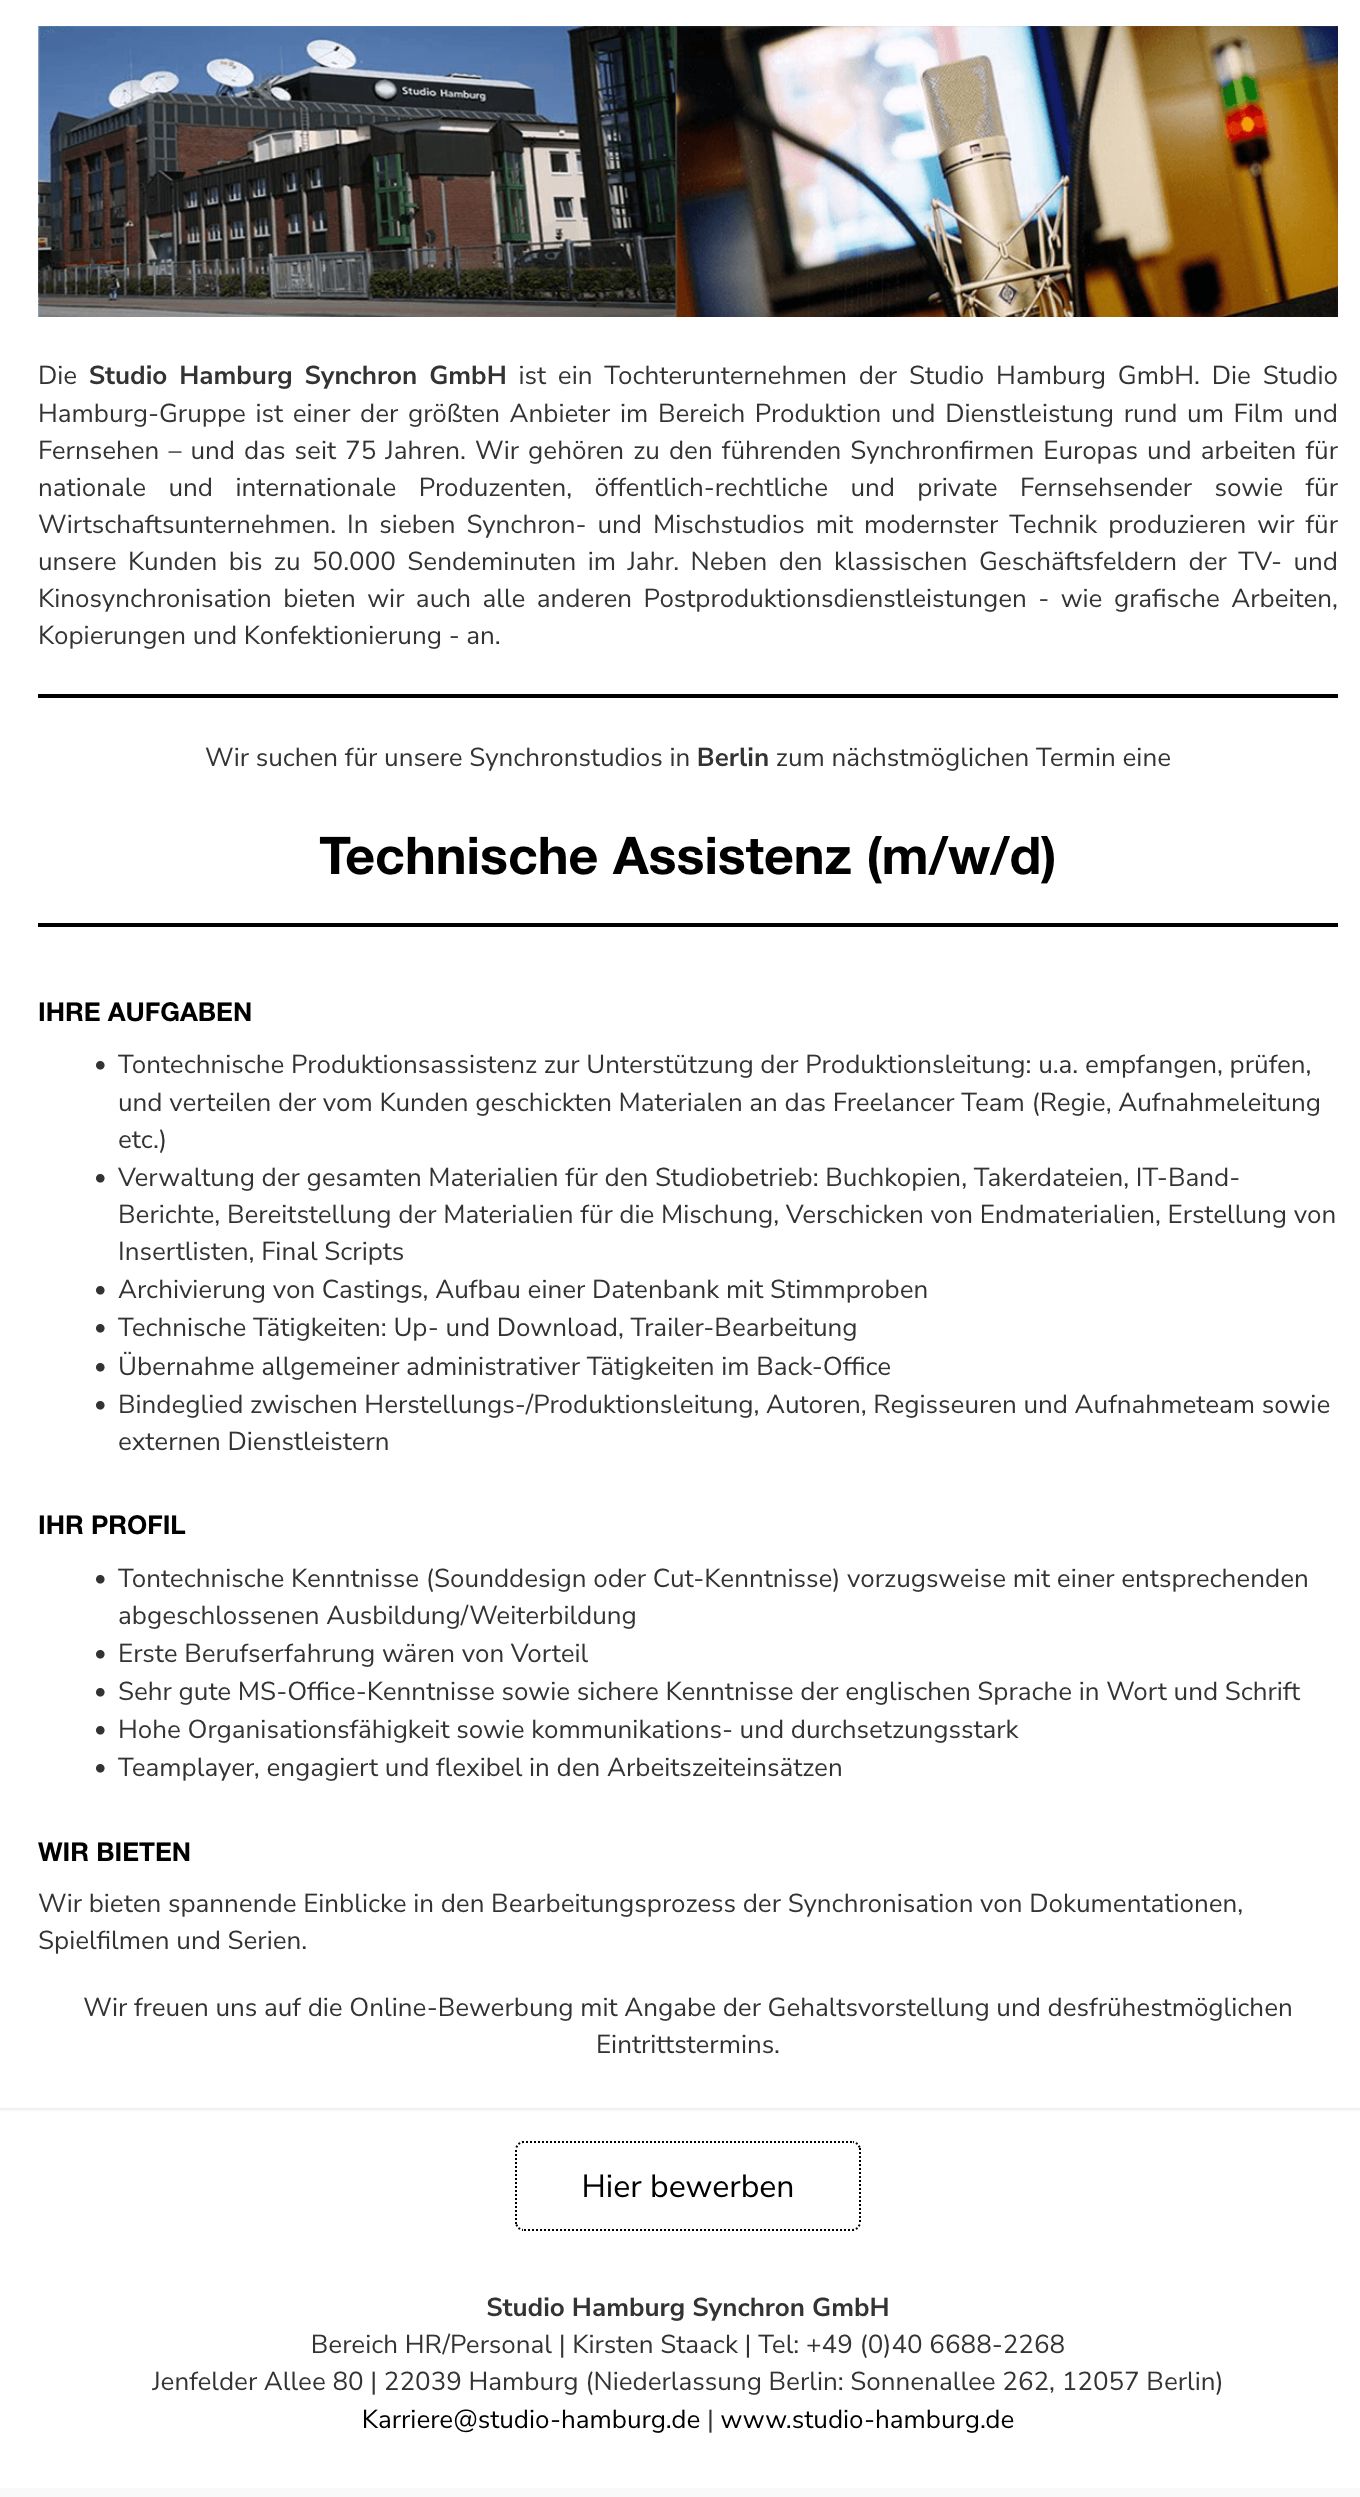 Technische Assistenz (m/w/d)